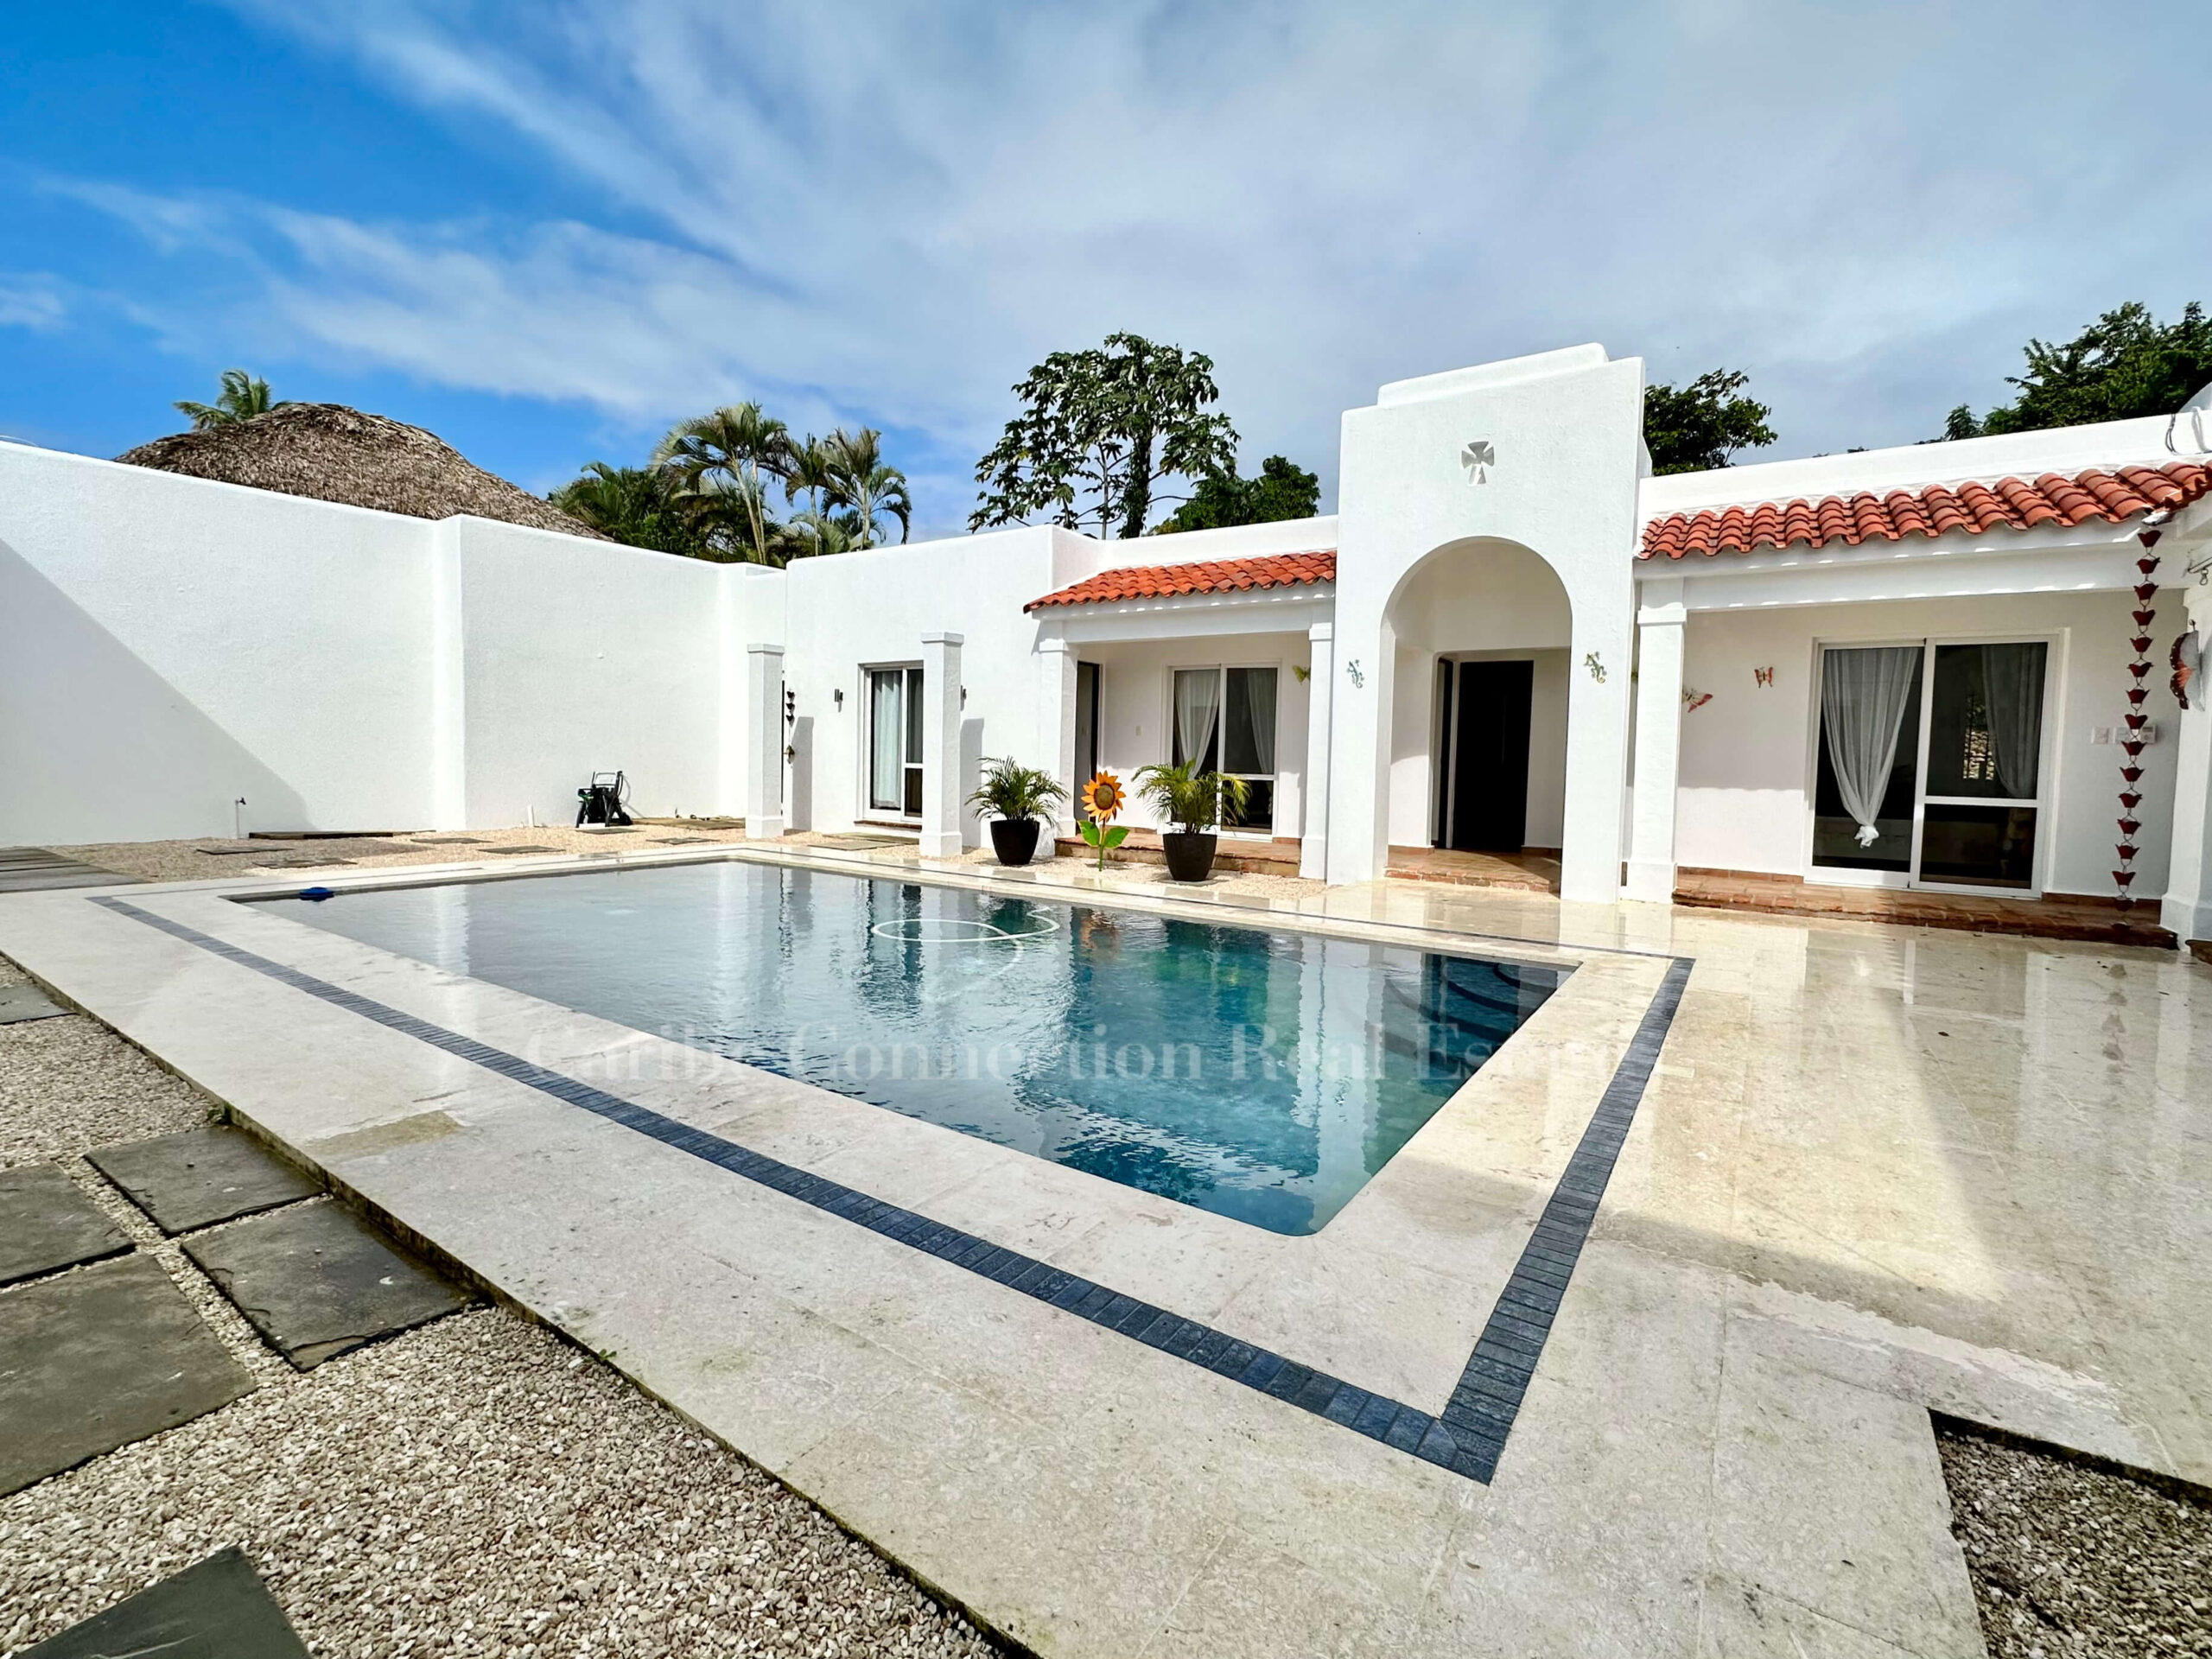 Mediterranean style villa in beachfront gated community